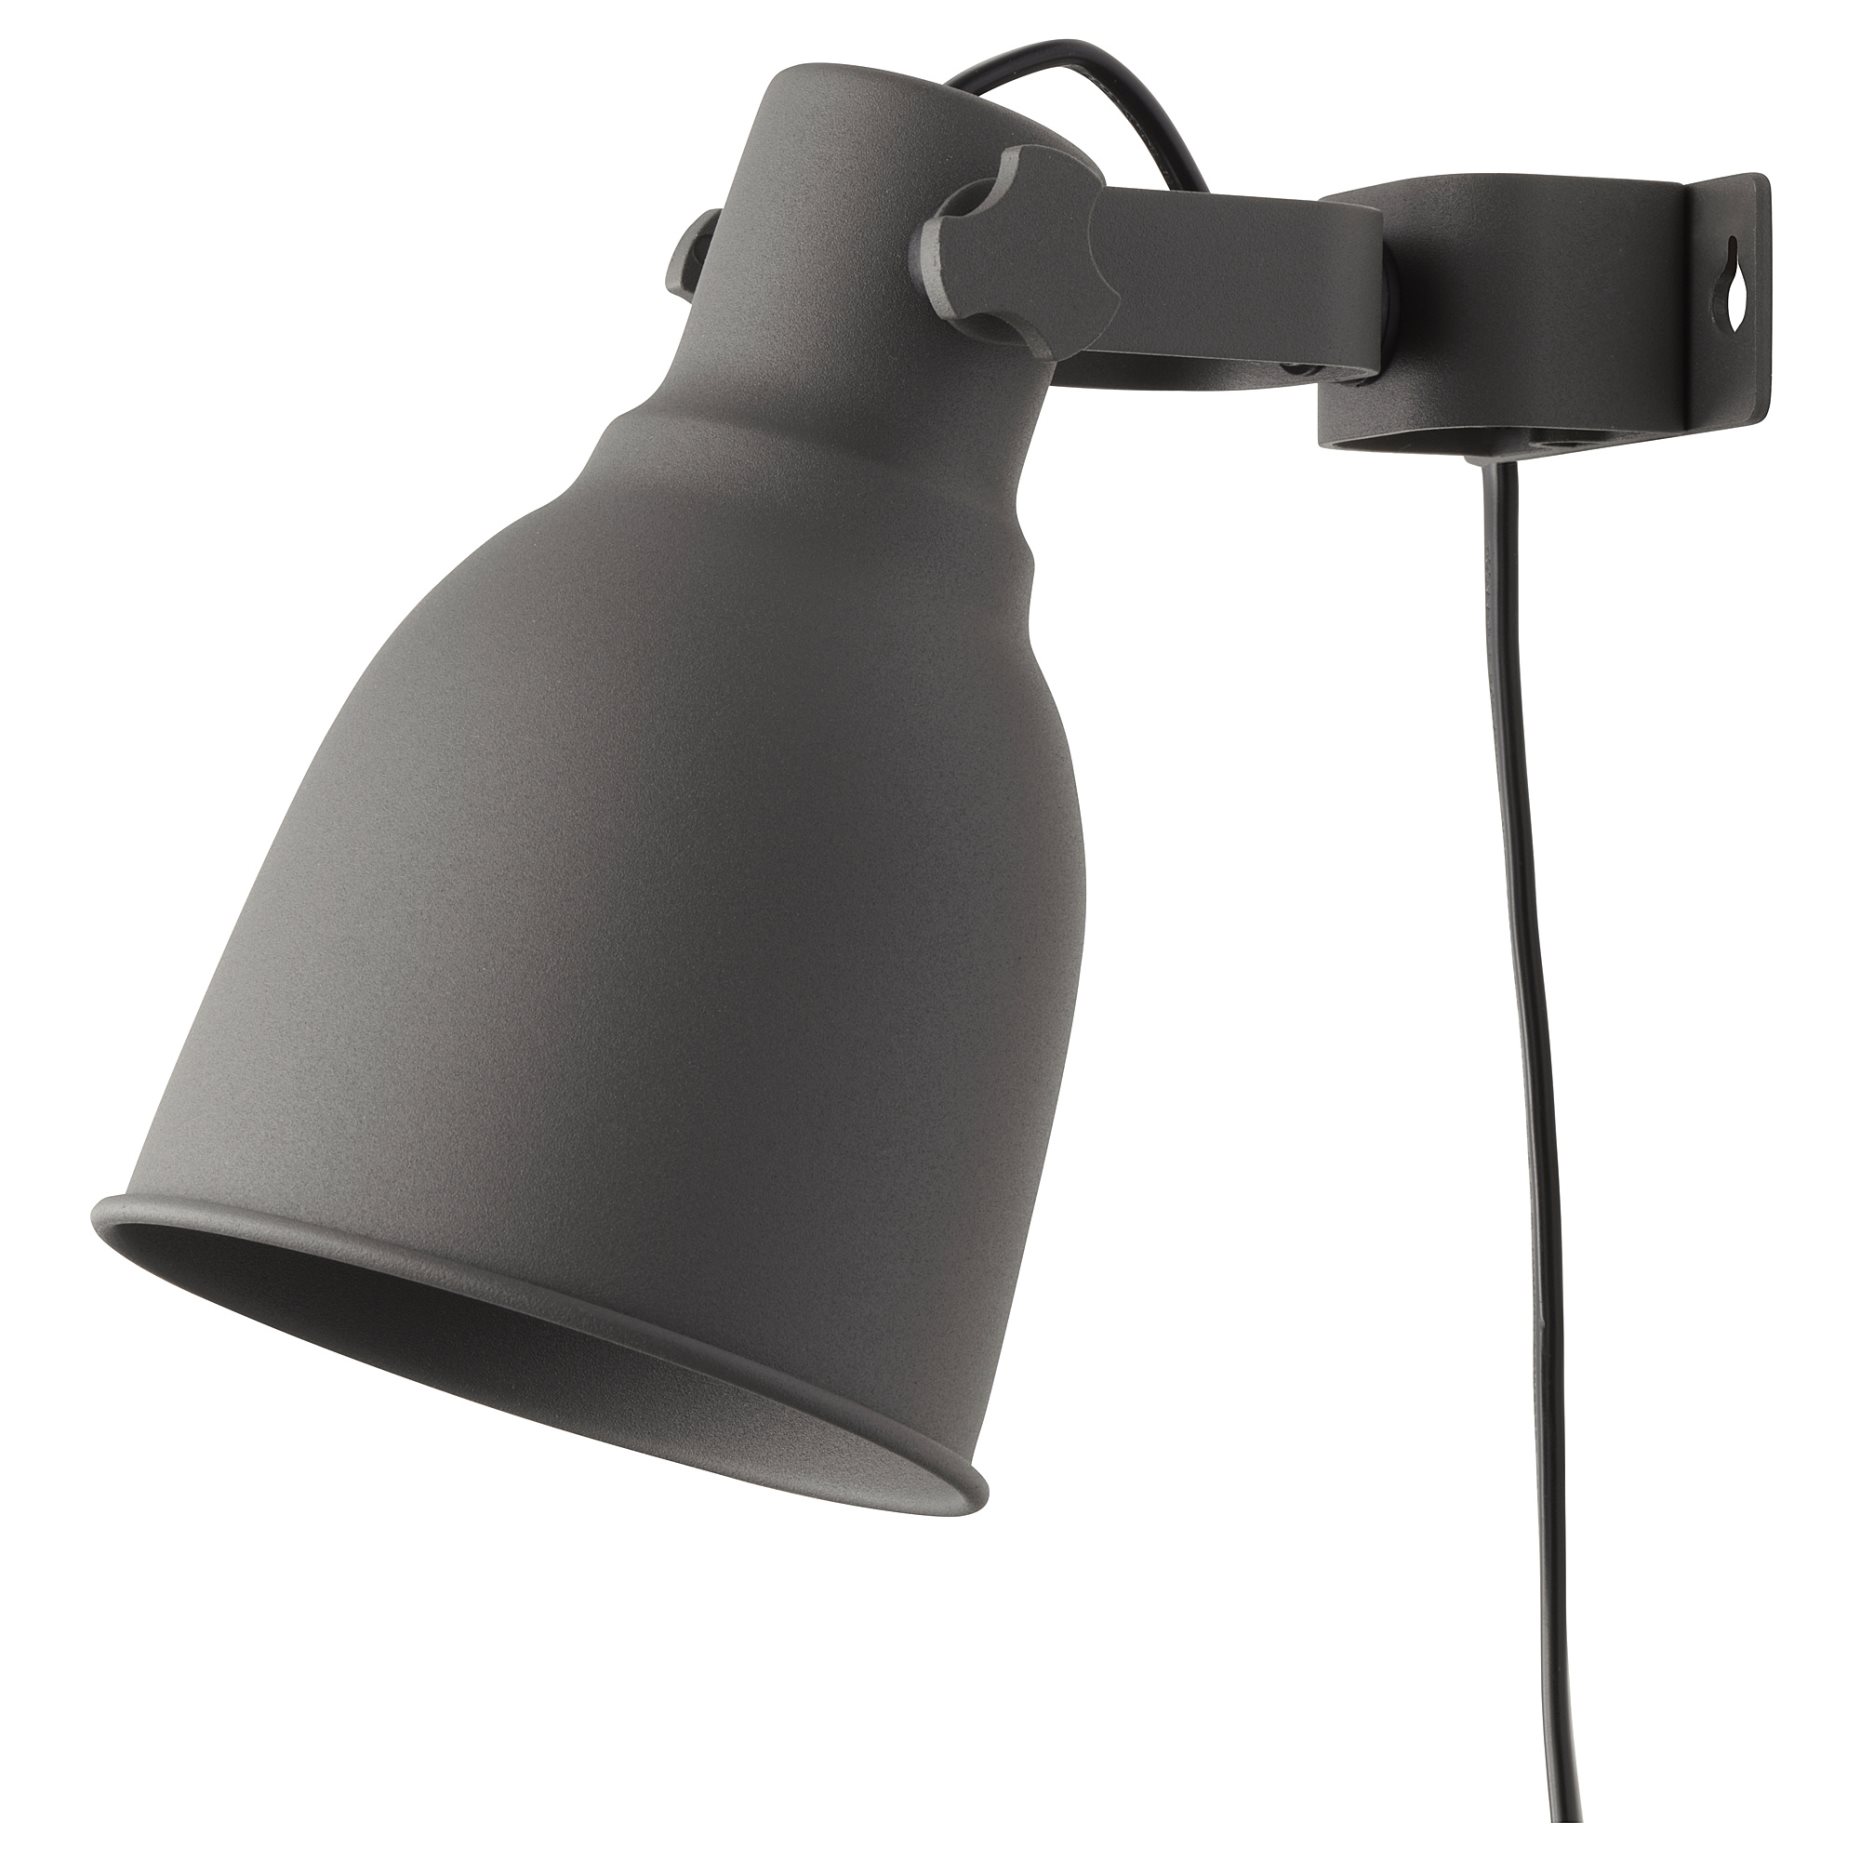 HEKTAR, лампа за стена/със скоба, 802.153.08